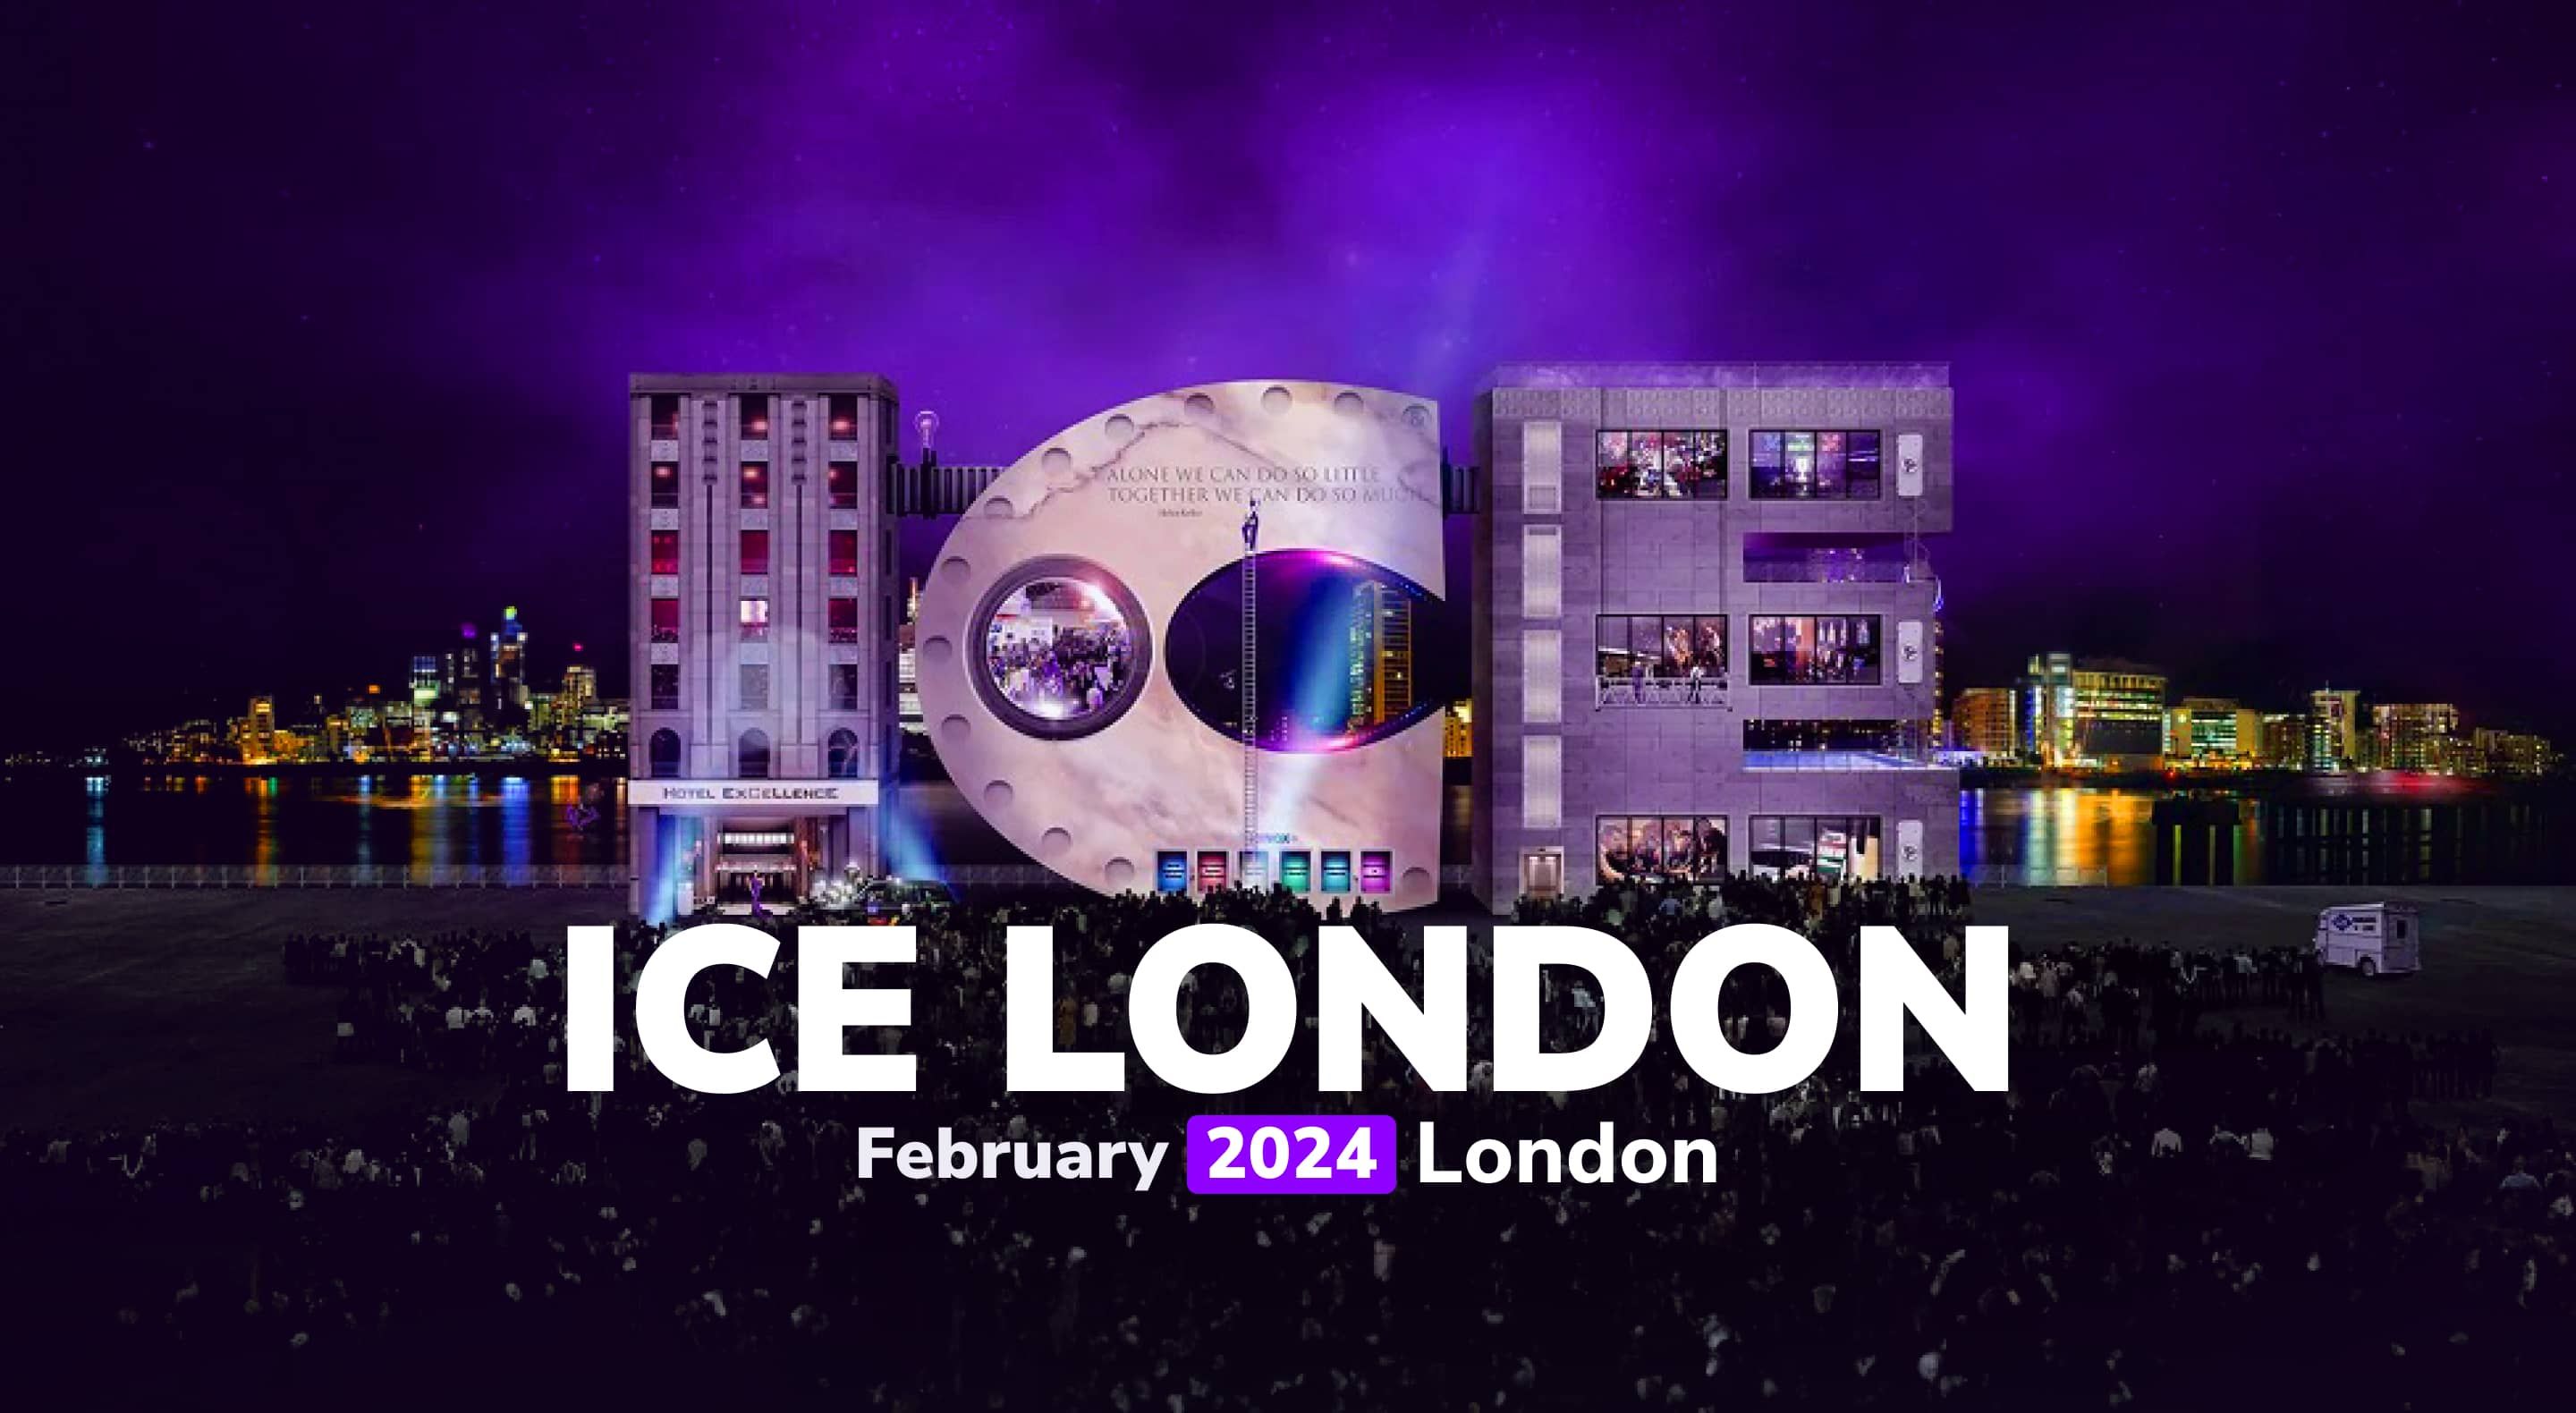 iMoon eleva l'esperienza di gioco all'ICE Londra 2024 con la vetrina di "Crash Royale".